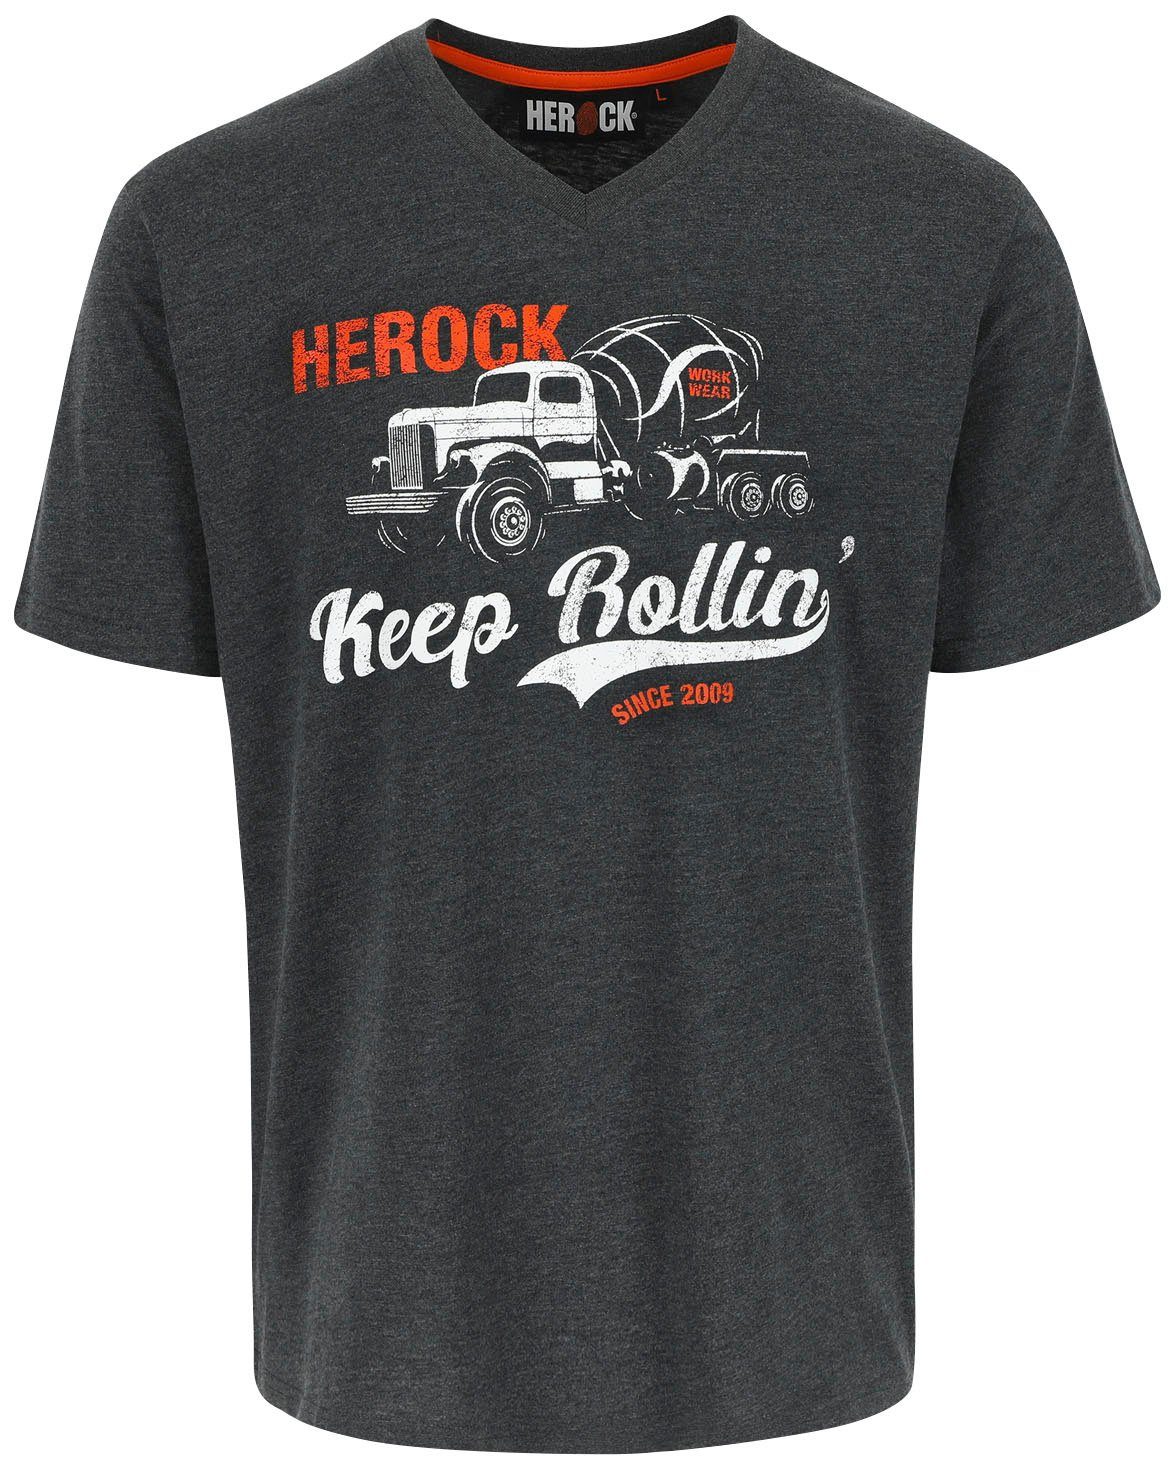 Einkaufen Limited Rollin T-Shirt Edition Herock